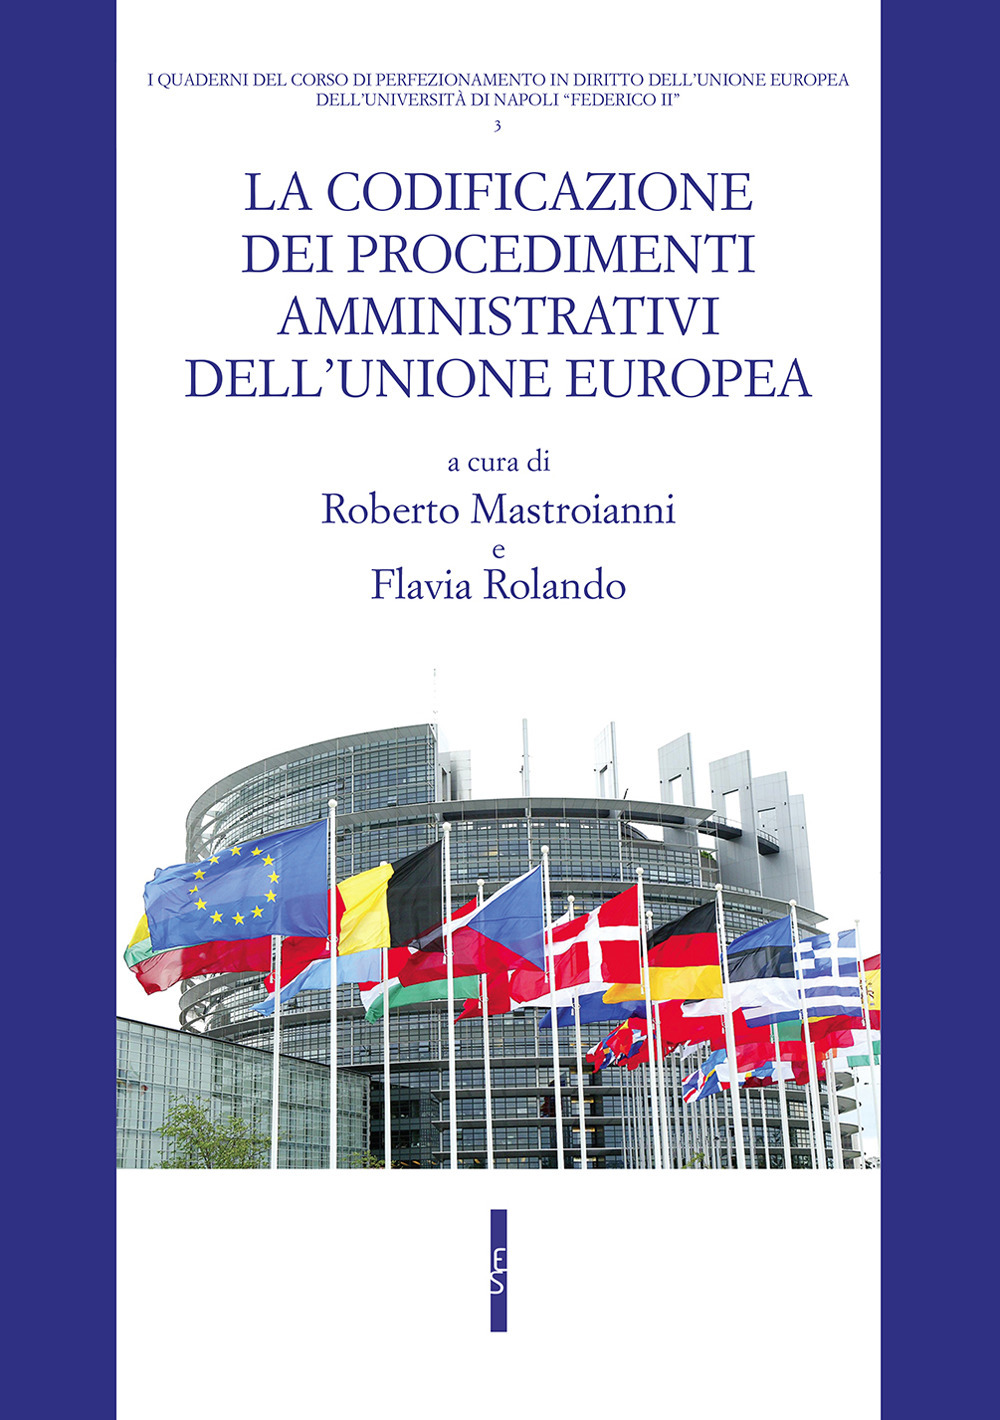 La codificazione dei procedimenti amministrativi dell'Unione europea